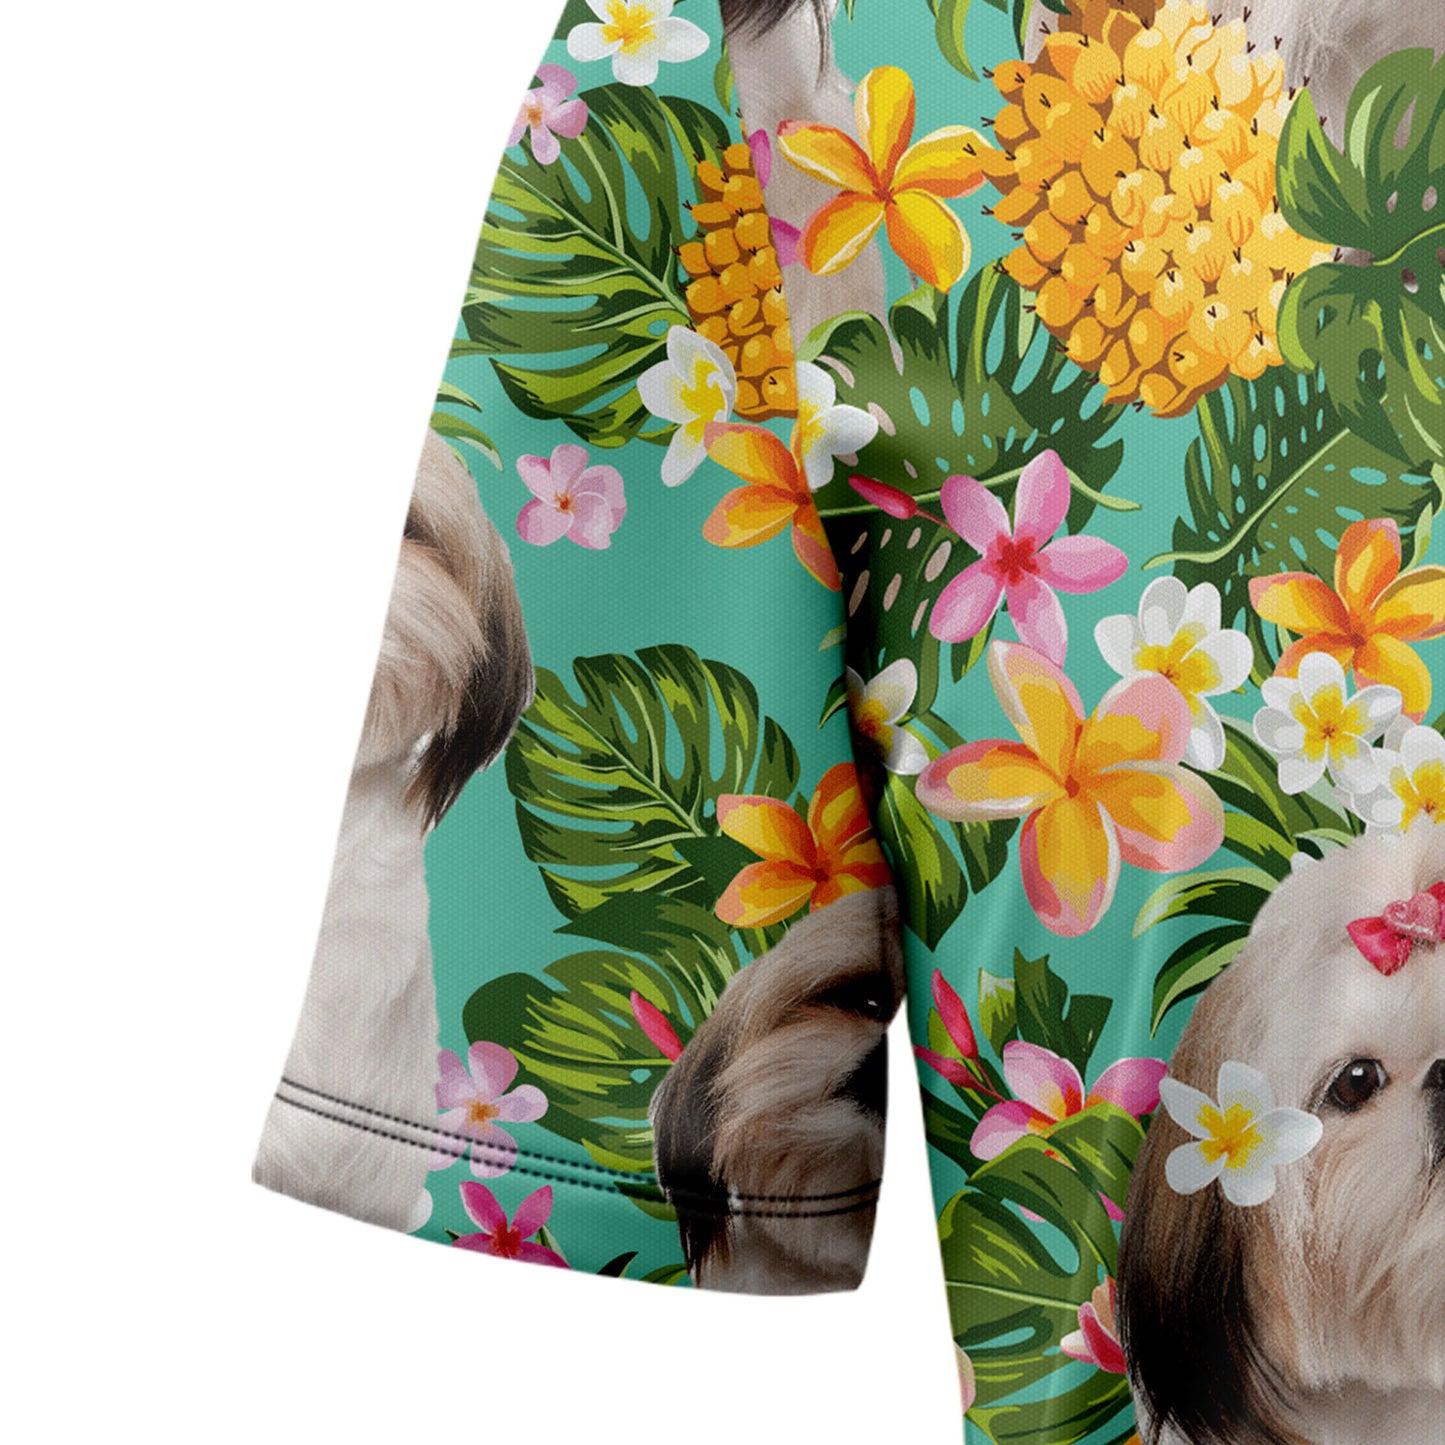 Tropical Pineapple Shih Tzu H87057 Hawaiian Shirt